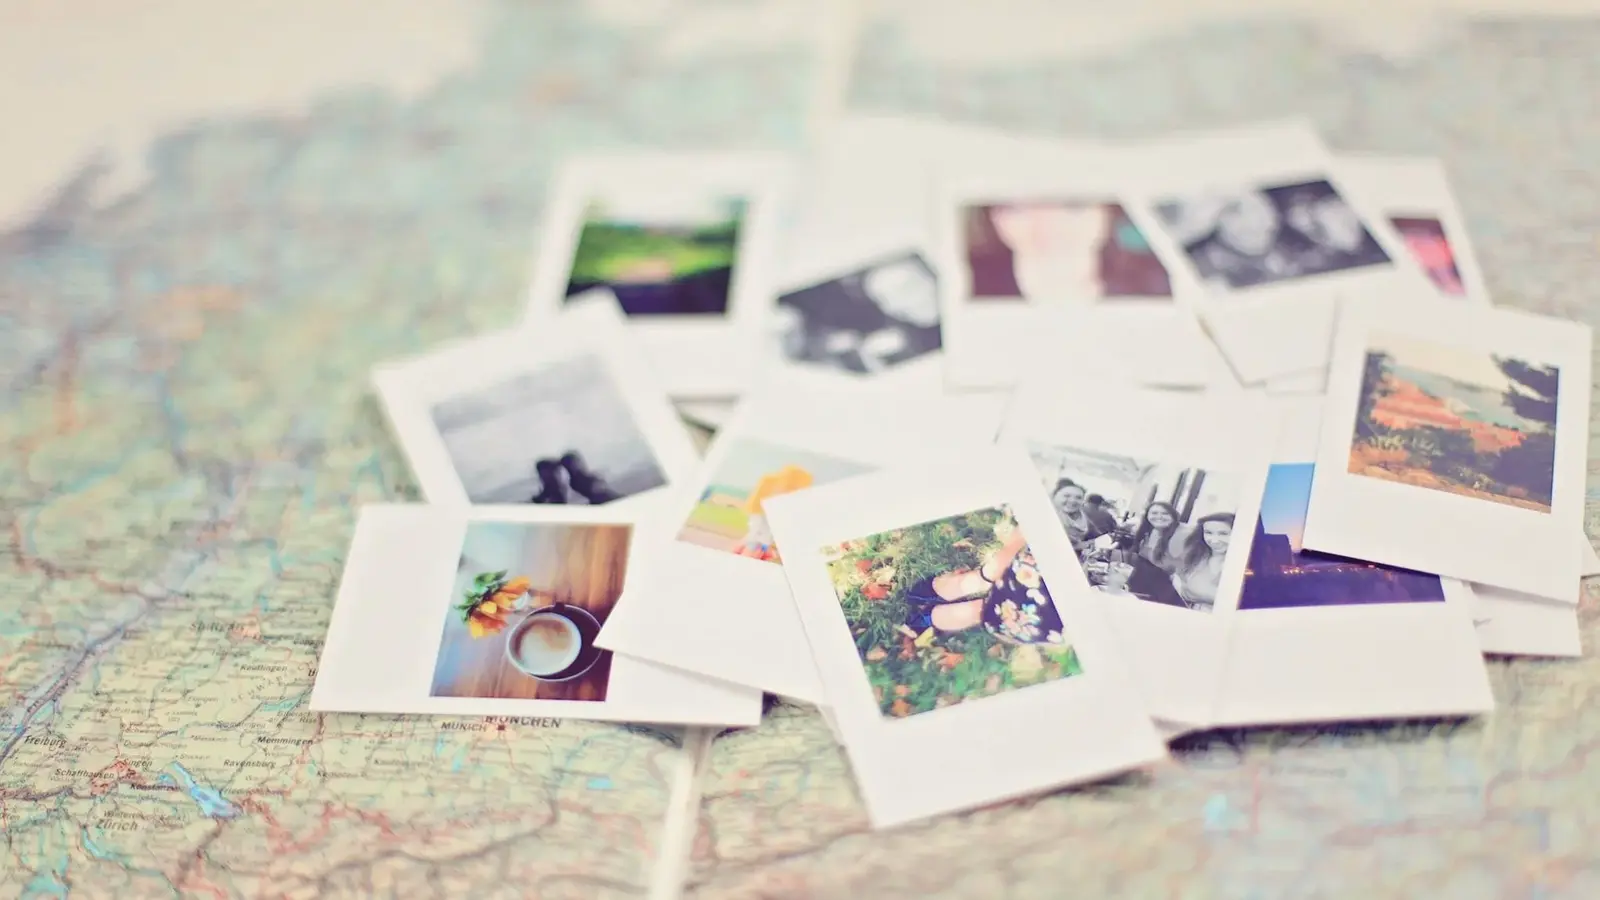 Polaroid-Fotos liegen auf einer Weltkarte